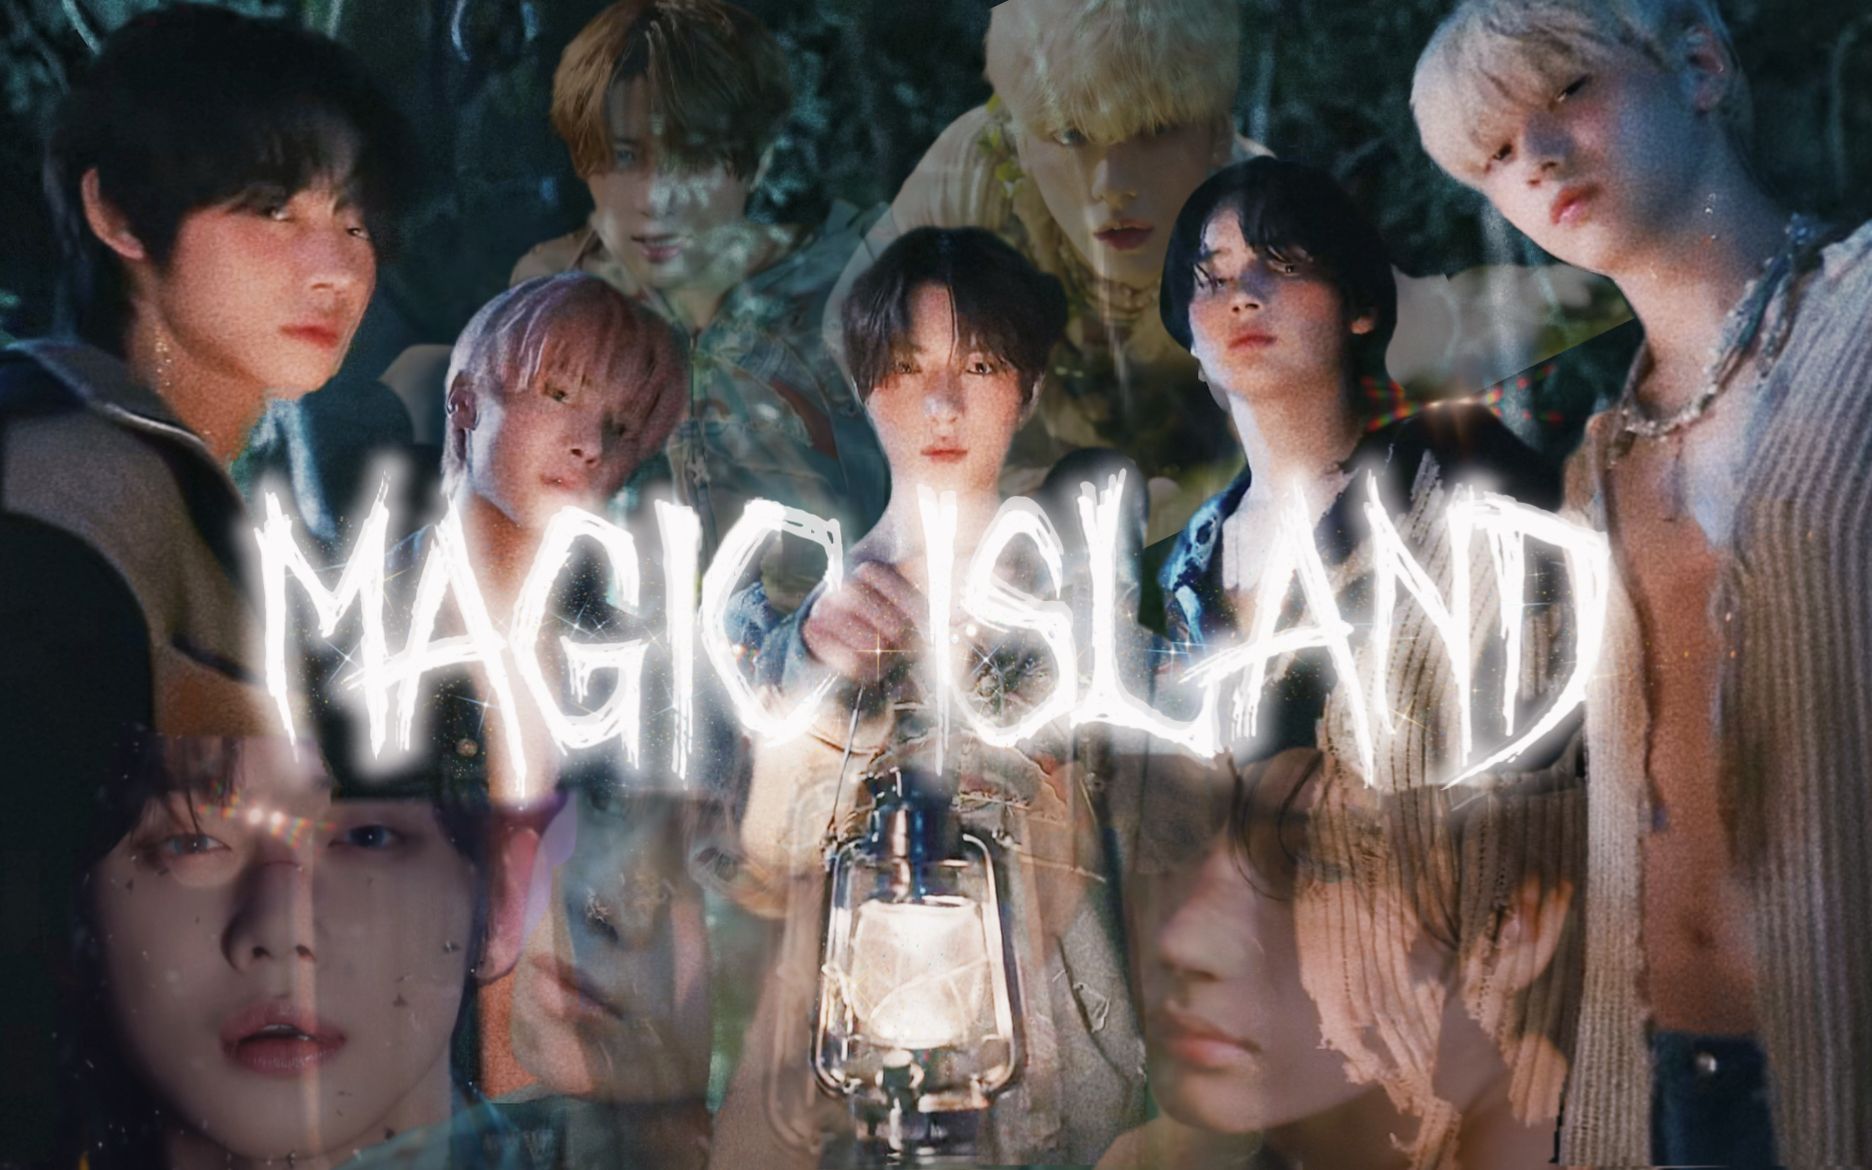 【反转剧情/视听盛宴/多结局】𝓶𝓪𝓰𝓲𝓬 𝓲𝓼𝓵𝓪𝓷𝓭 TXT互动游戏《Magic Island》